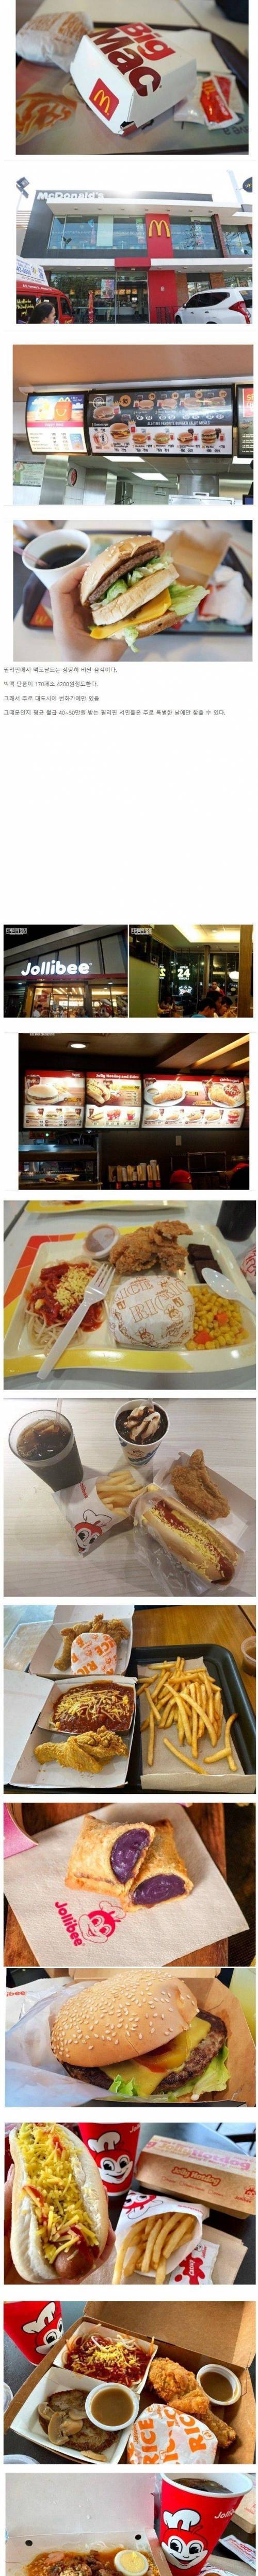 필리핀에서 맥도날드가 망한 이유.